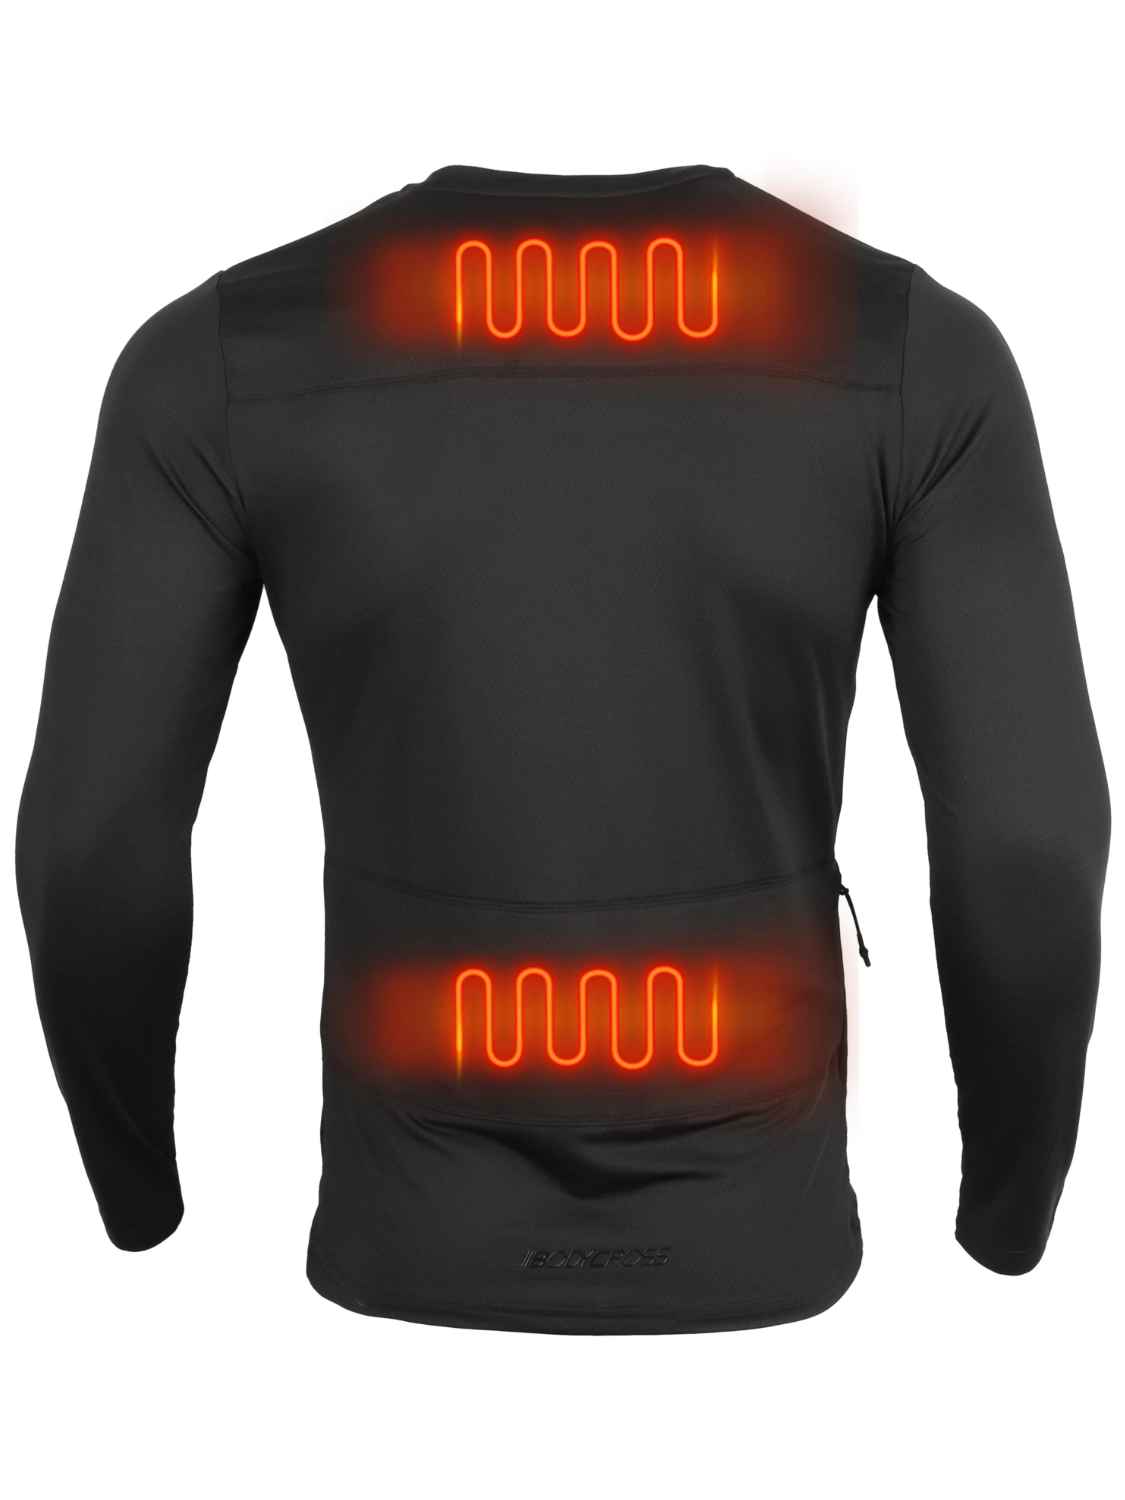 Camiseta térmica DIONIS ML Negro